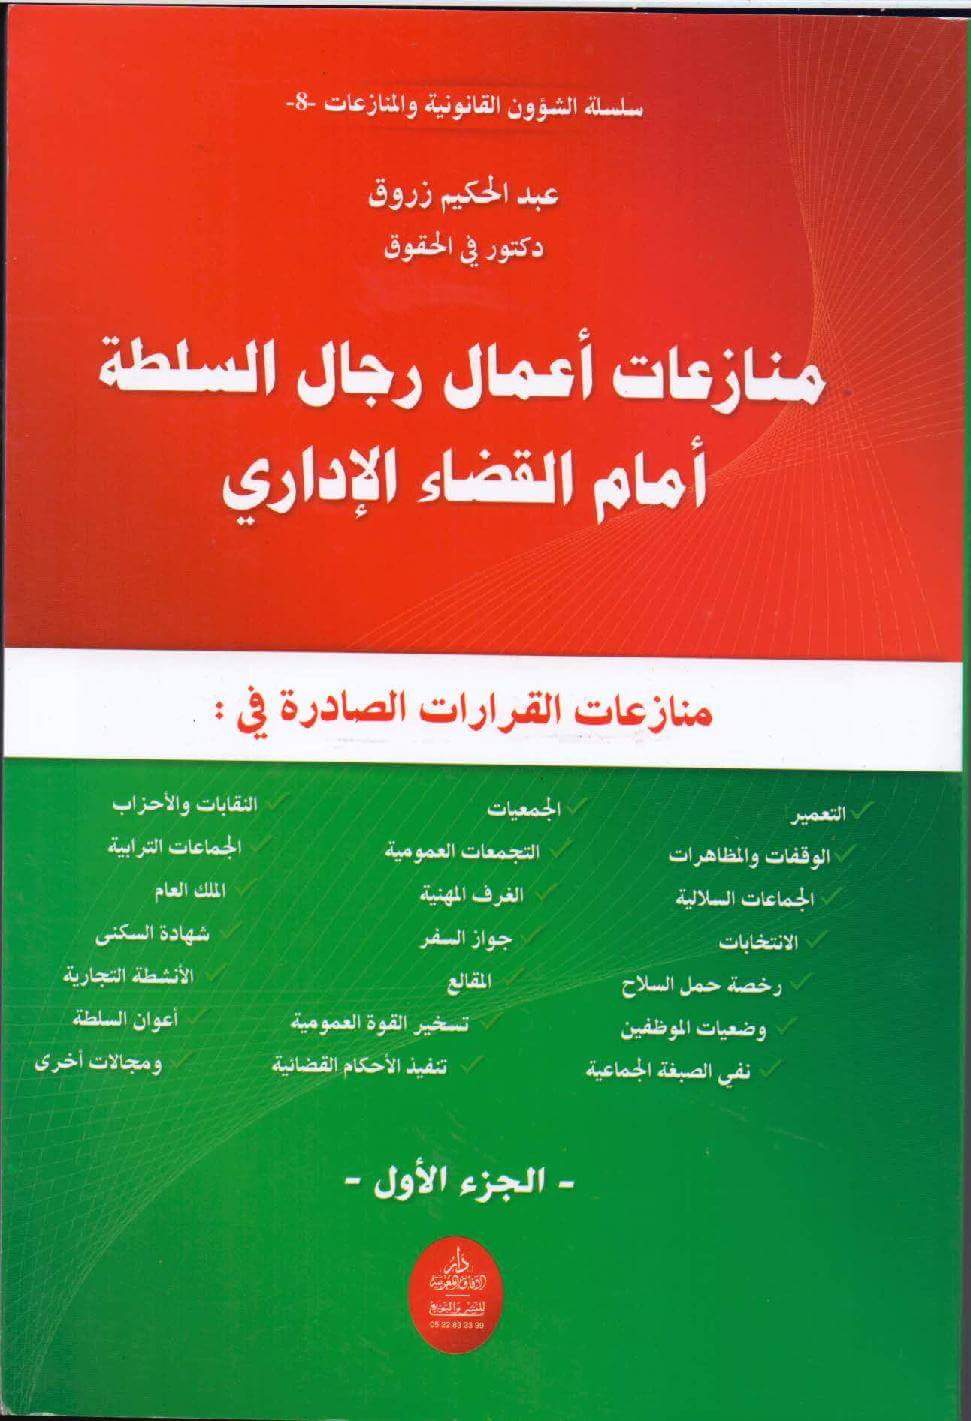 إصدار جديد للدكتور عبد الحكيم زروق تحت عنوان منازعات أعمال رجال السلطة أمام القضاء الإداري